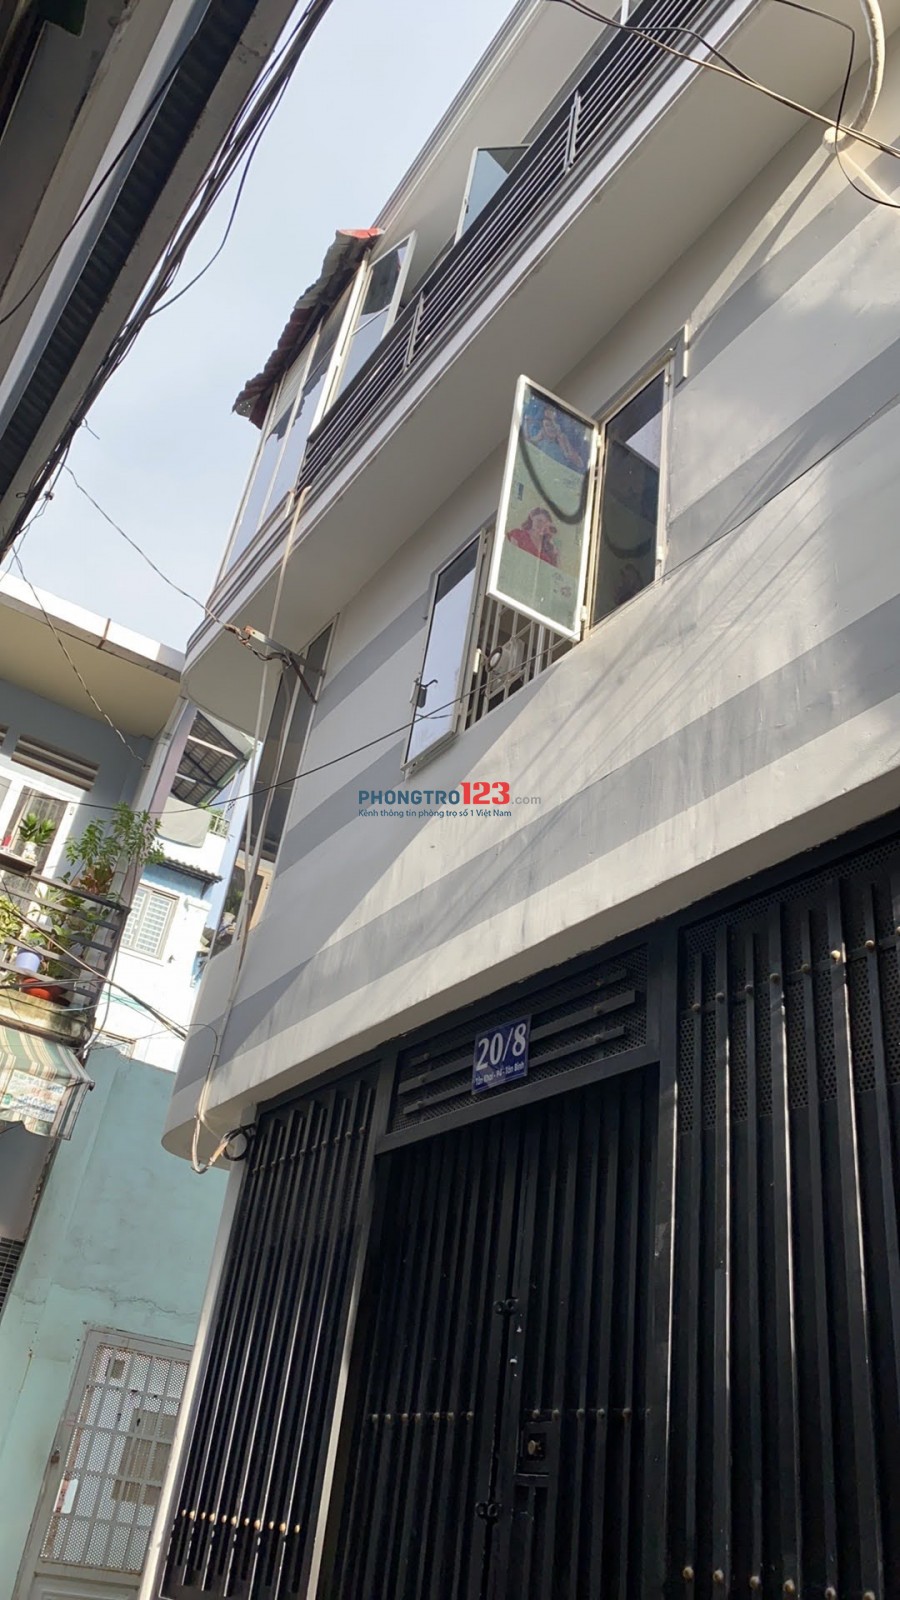 Cho thuê phòng trọ thoáng mát tại Quận Tân Bình có máy lạnh, máy giặt chung, cửa sổ lớn